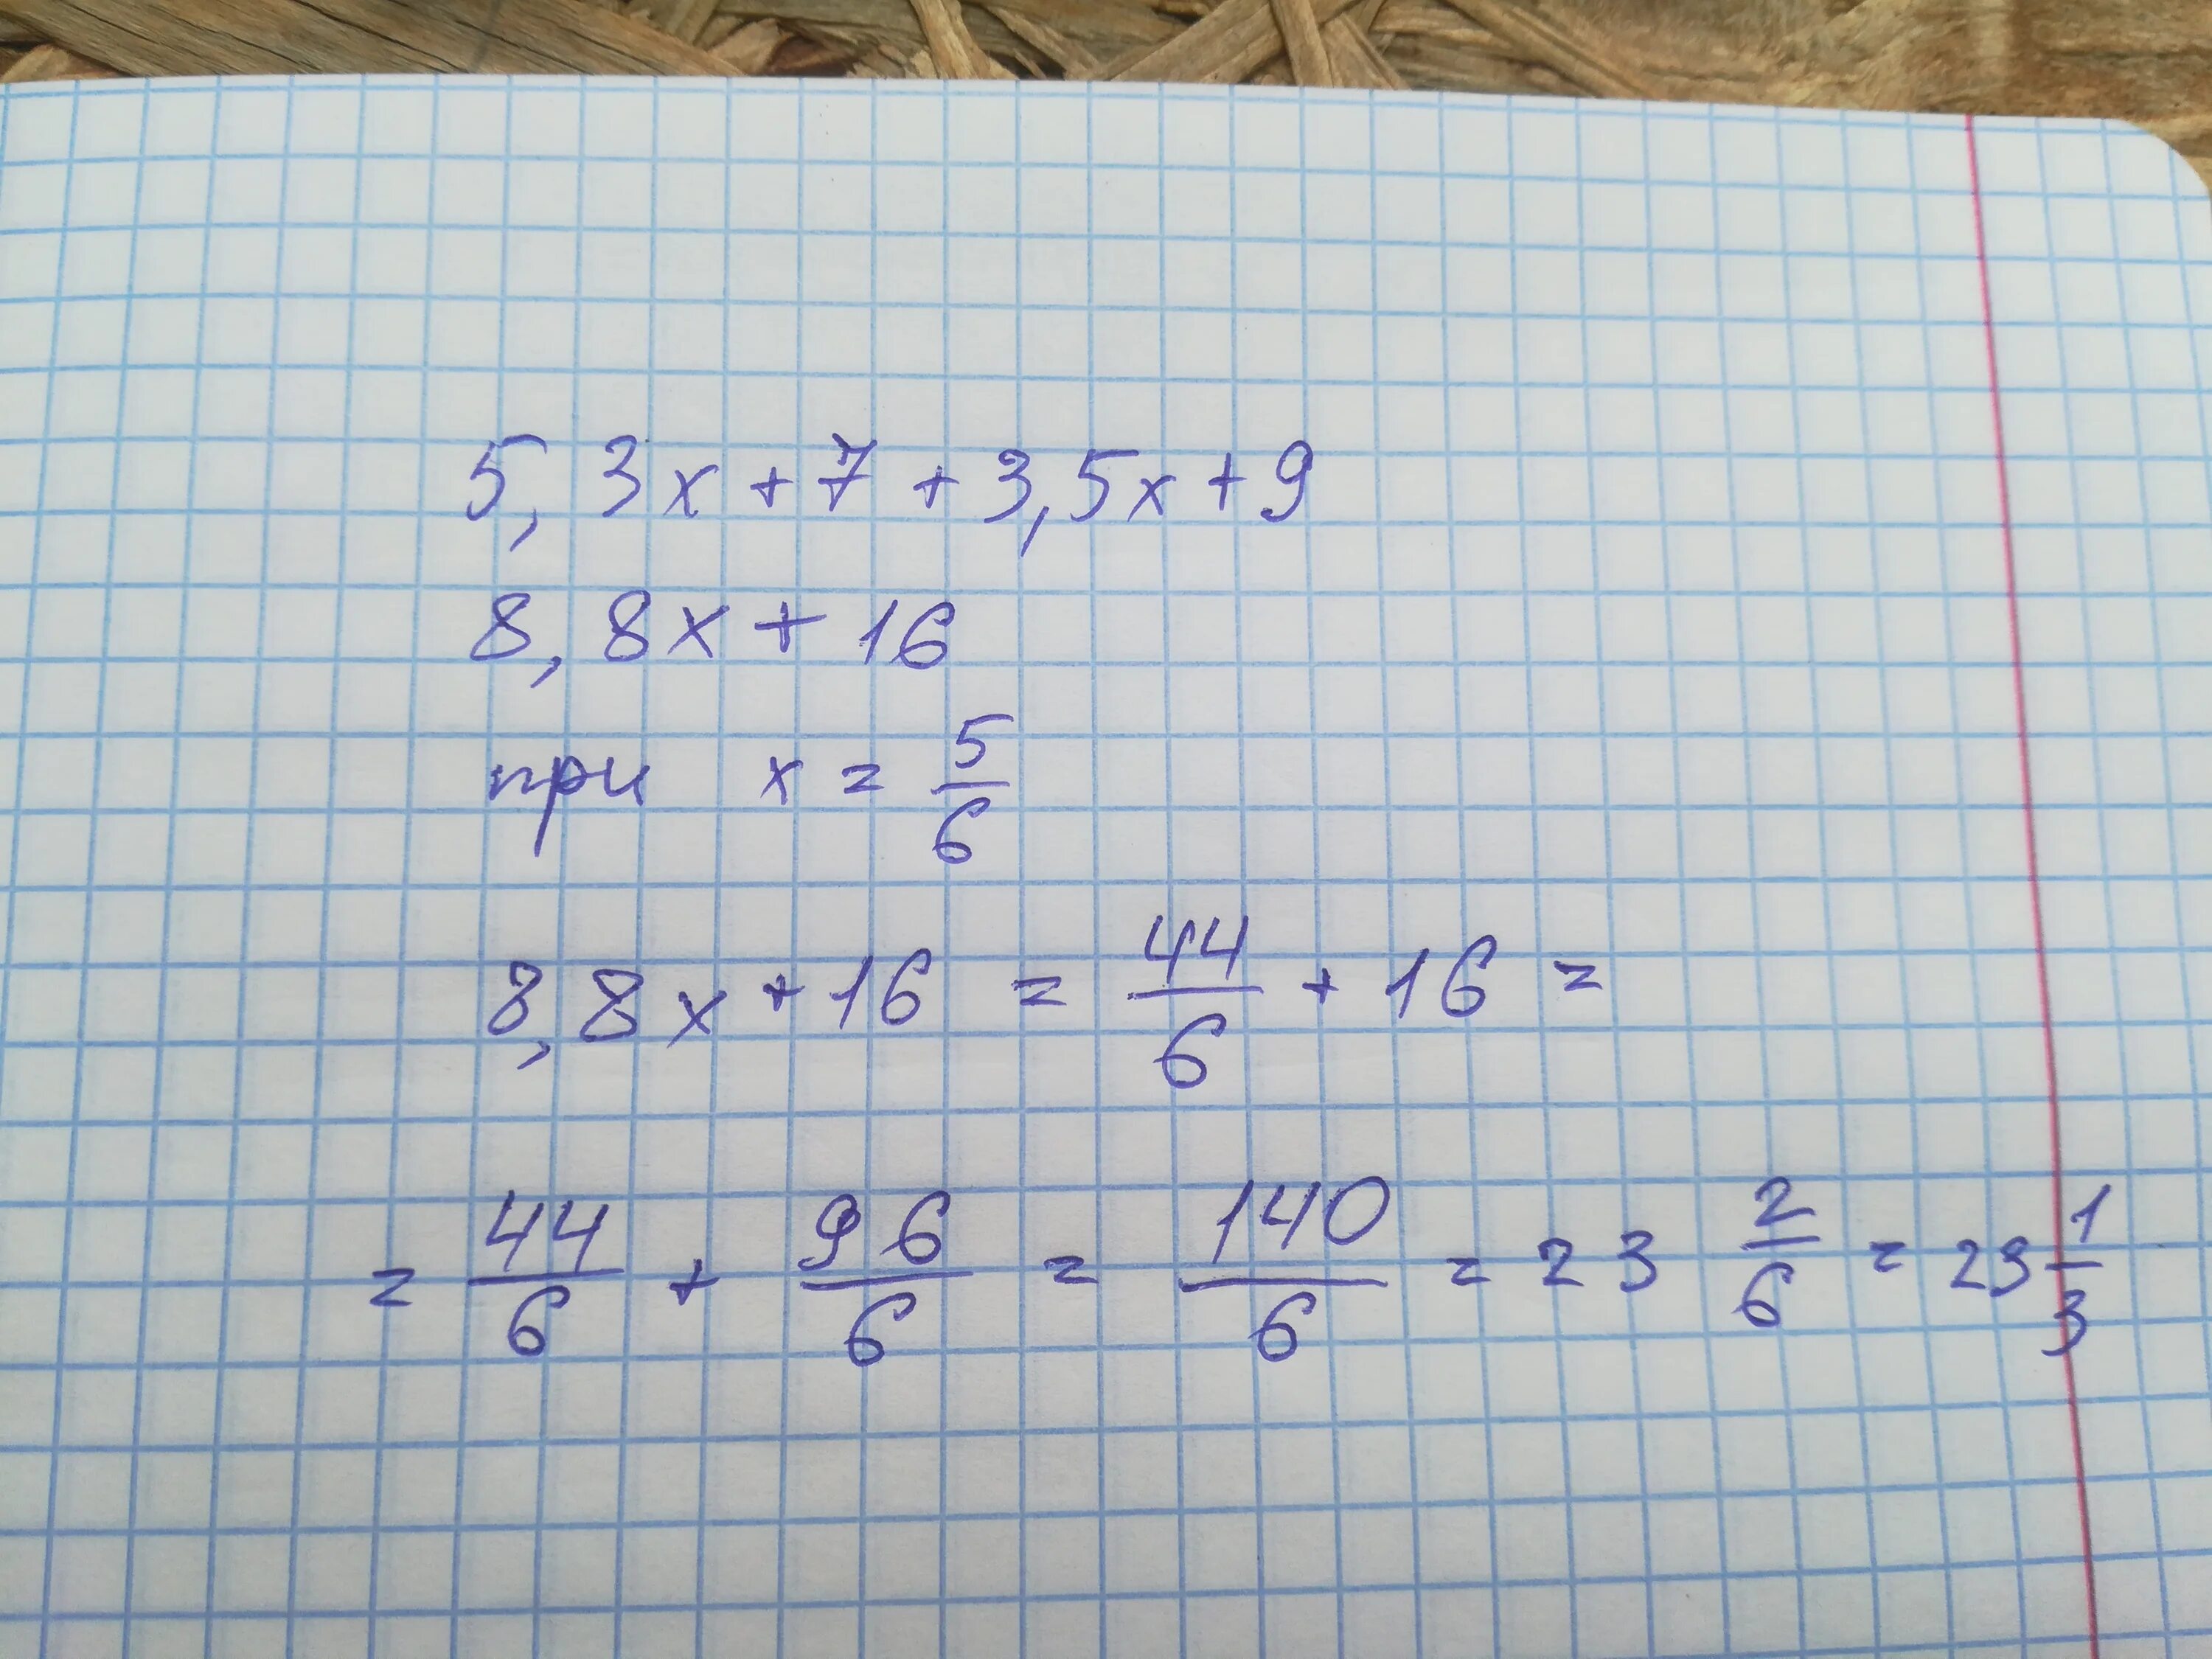 27 5 дробь 9 6. (X-9):x2-18x+81/x+9. X2-18x+81 сокращение. 7x9. 3/7 : X = 9/14.